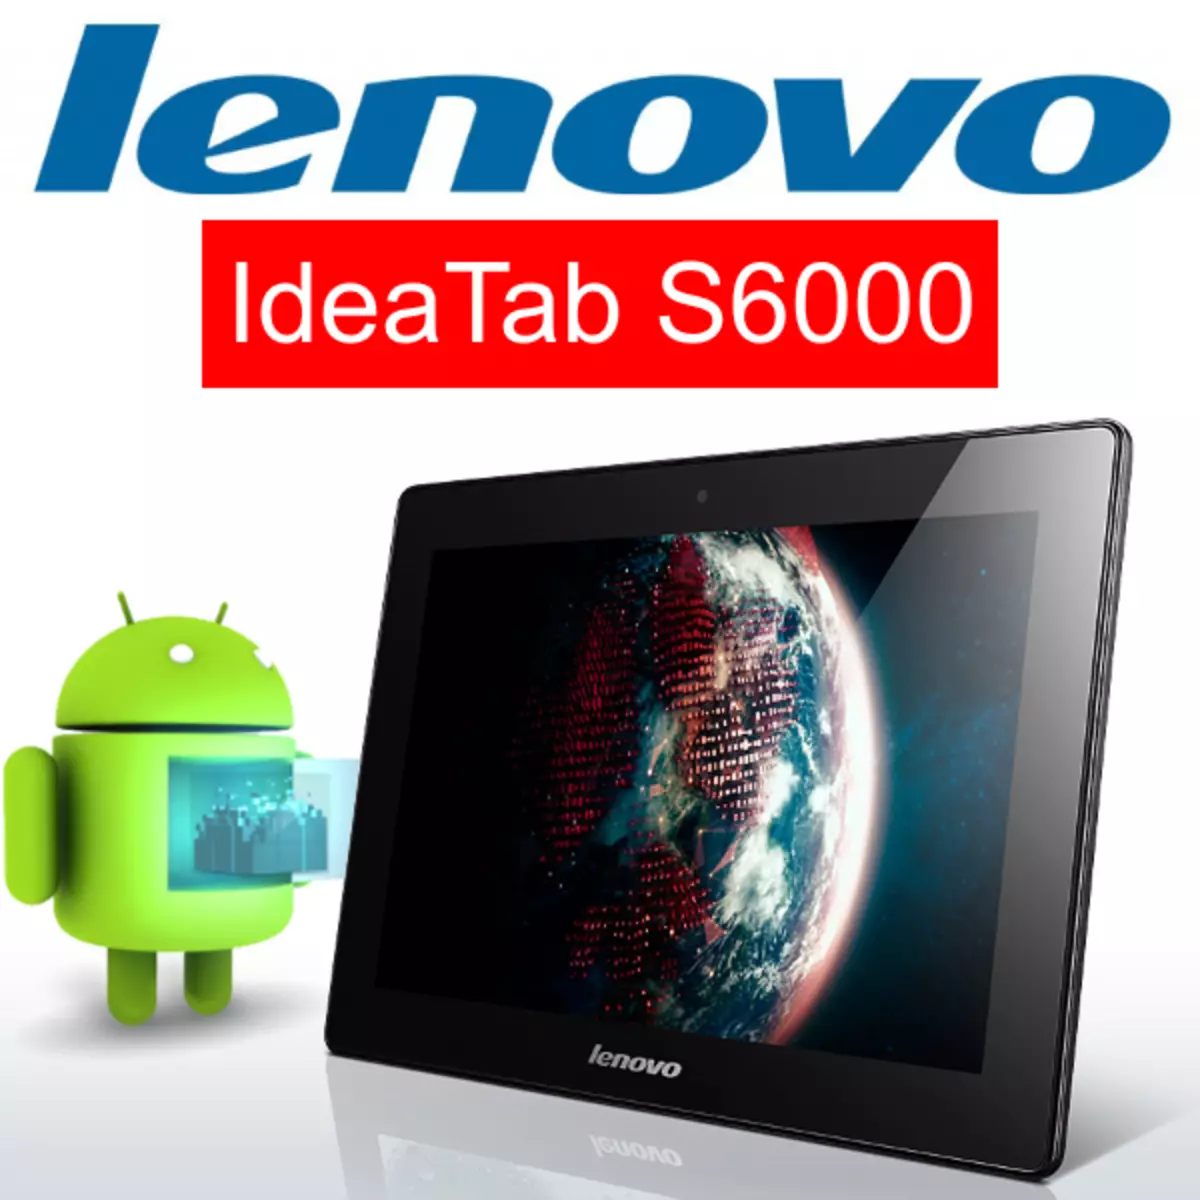 固件Lenovo iDeatab S6000